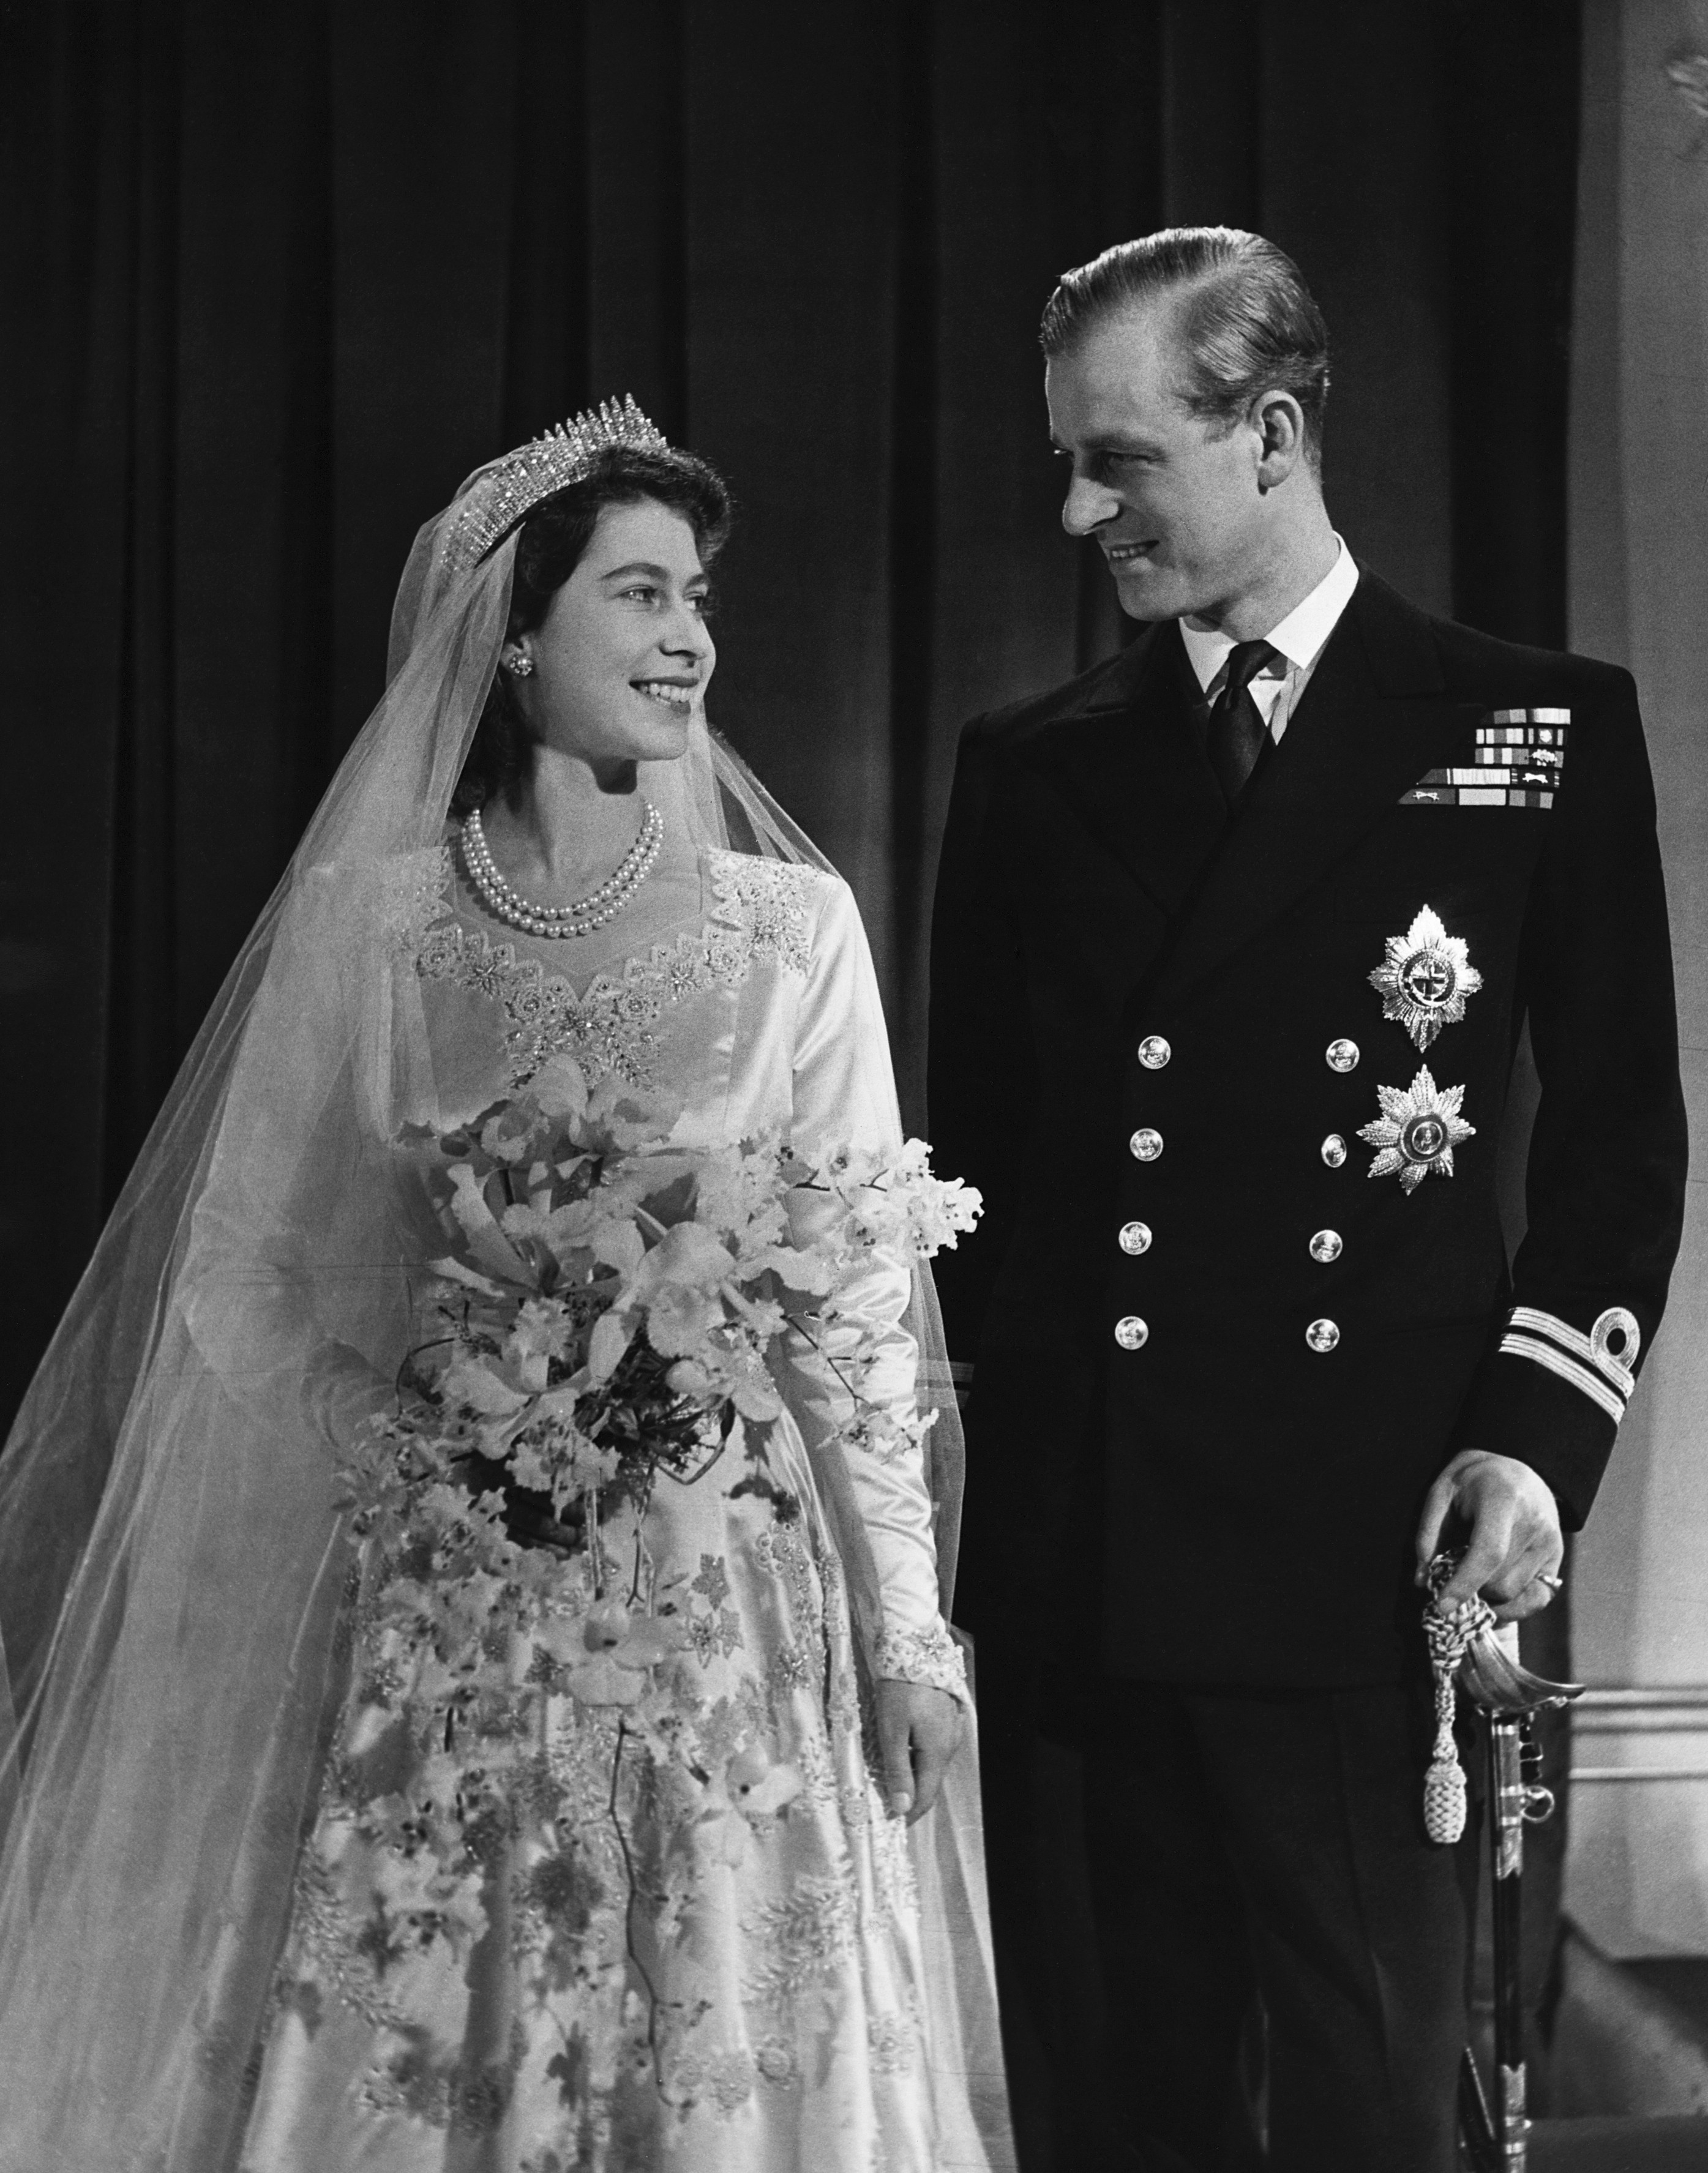 A Rainha Elizabeth 2ª, quando ainda princesa, em seu casamento com o Príncipe Philip (1921-2021), em novembro de 1947  (Foto: Getty Images)